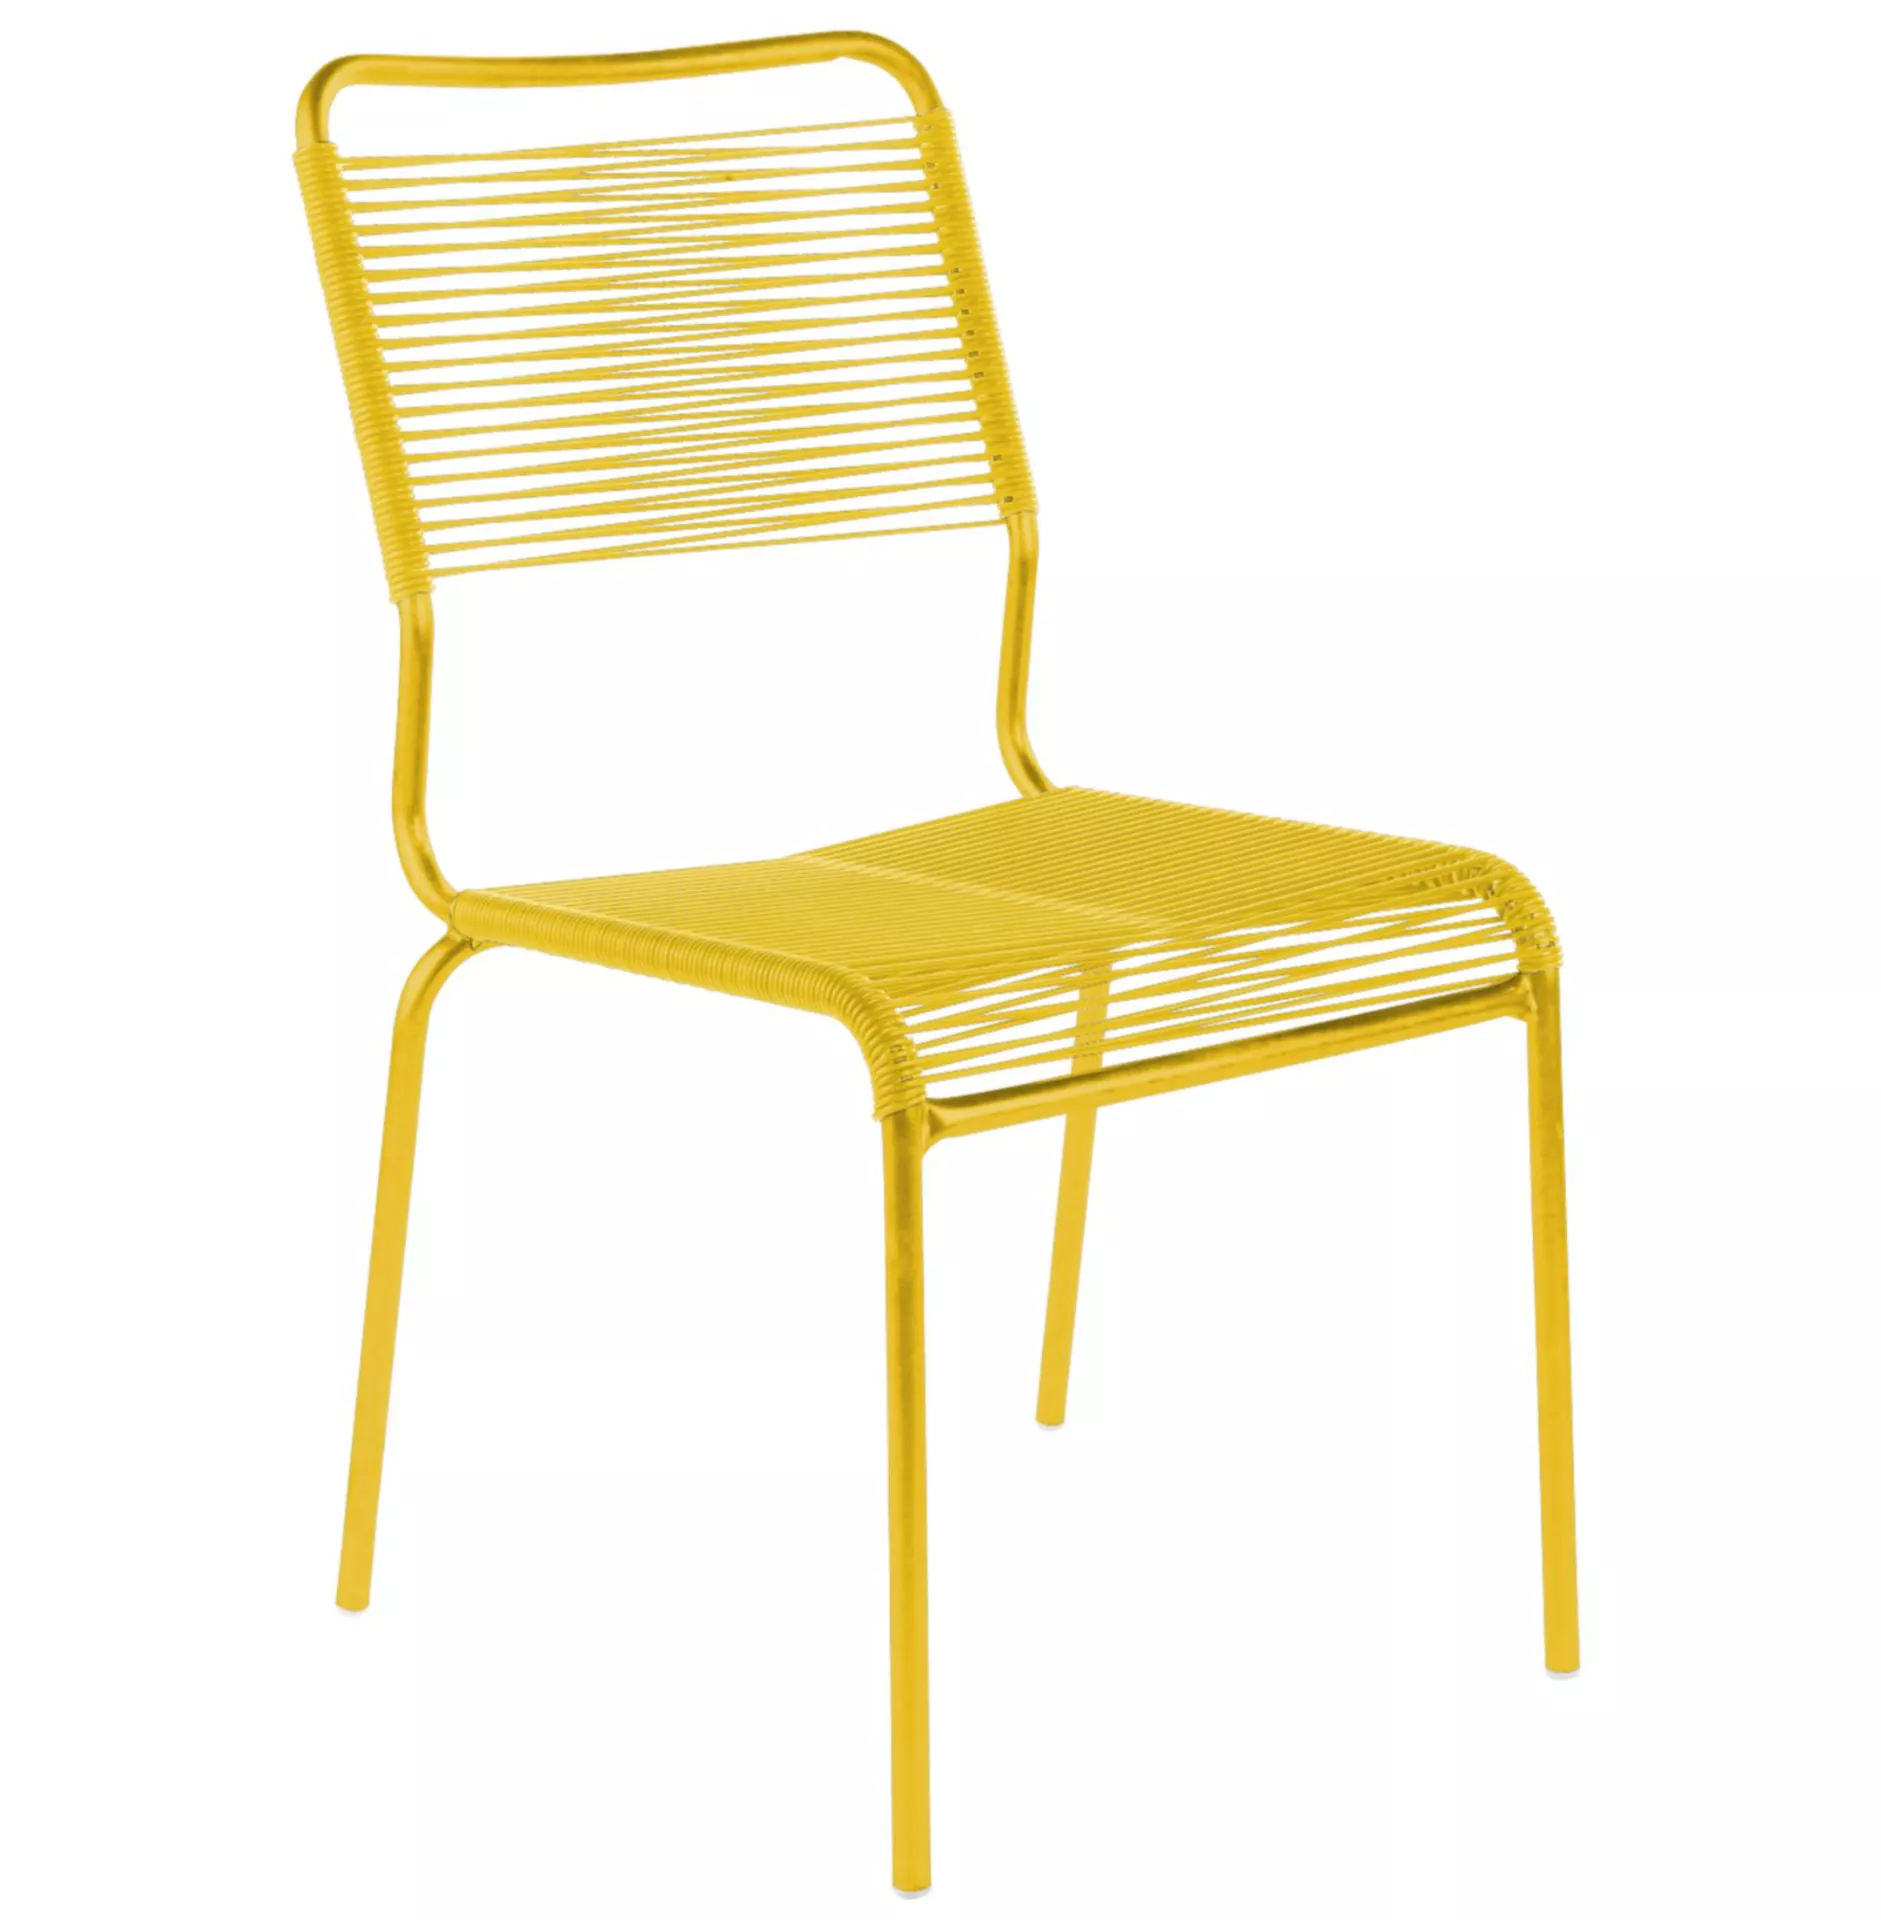 Spaghetti-Stuhl Rigi Schaffner / Farbe: Gelb